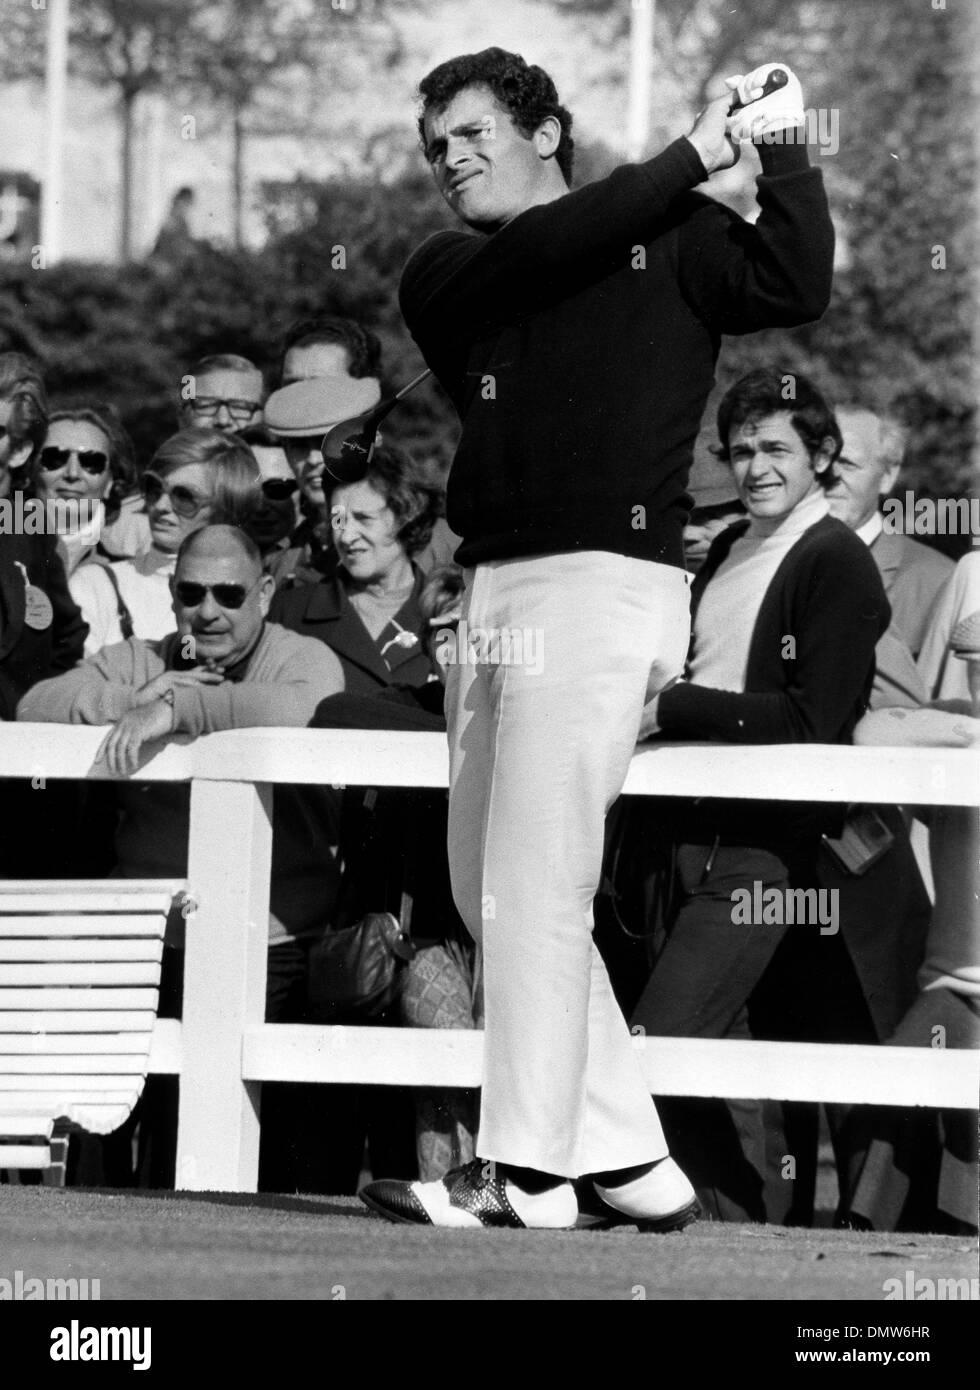 17 octobre 1970 - Saint-Nom-La-Breteche, France - Golfeur Roberto Bernardini joue dans l'excursion de champions à Saint-Nom-la-Bretèche. (Crédit Image : © Keystone Photos USA/ZUMAPRESS.com) Banque D'Images